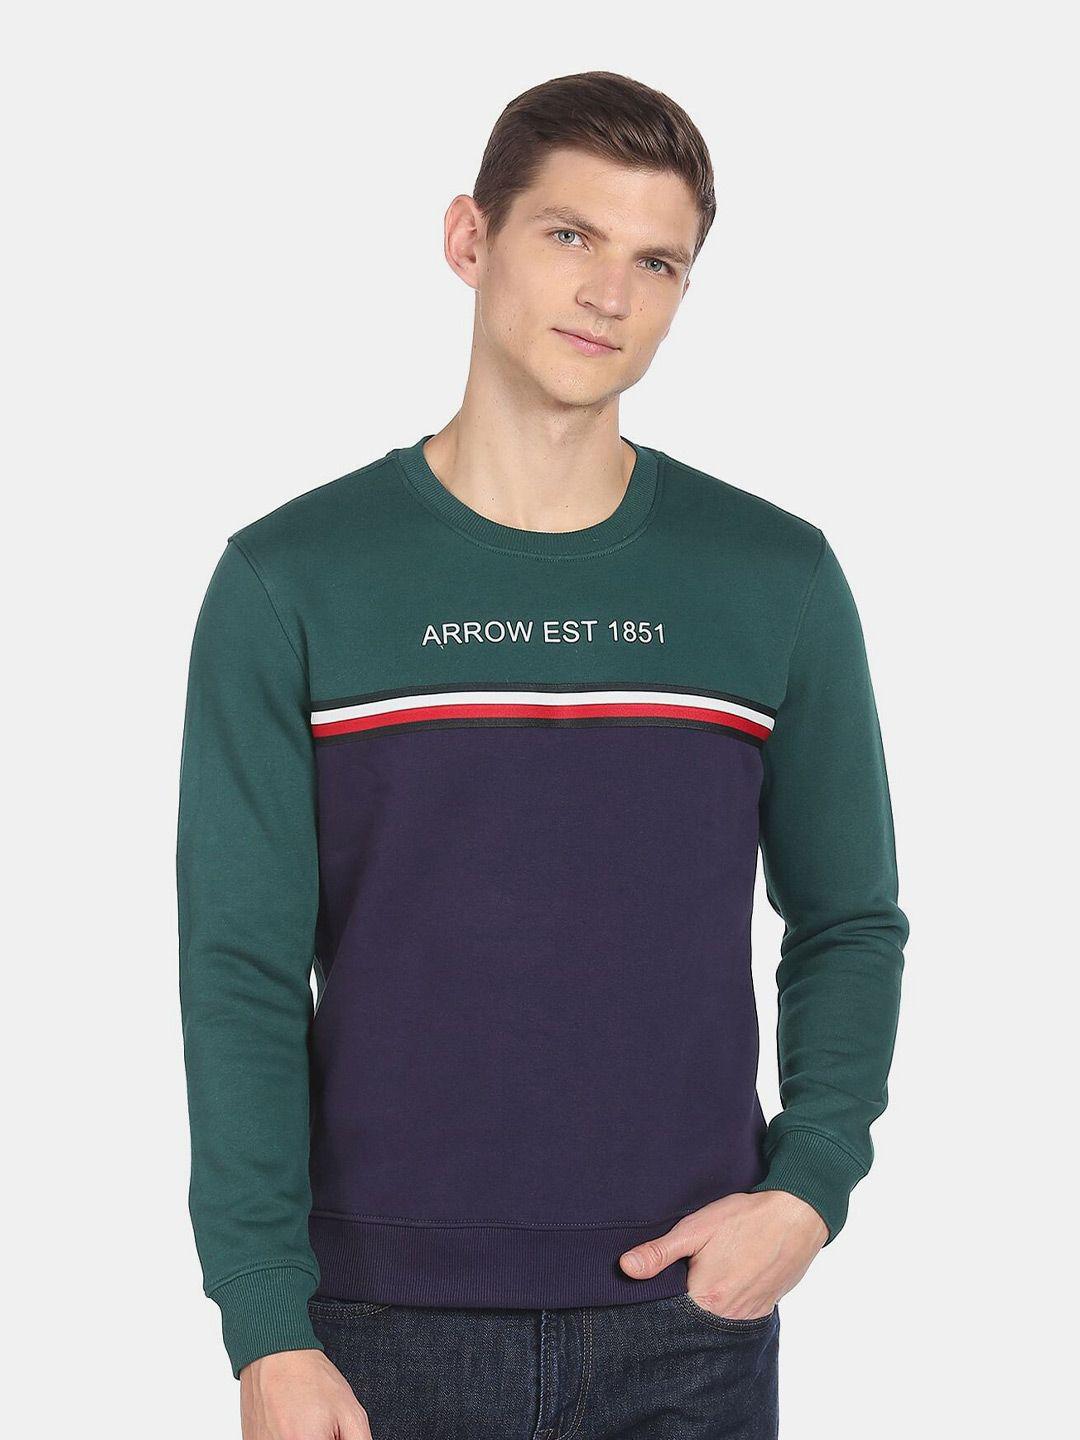 arrow-sport-men-printed-sweatshirt